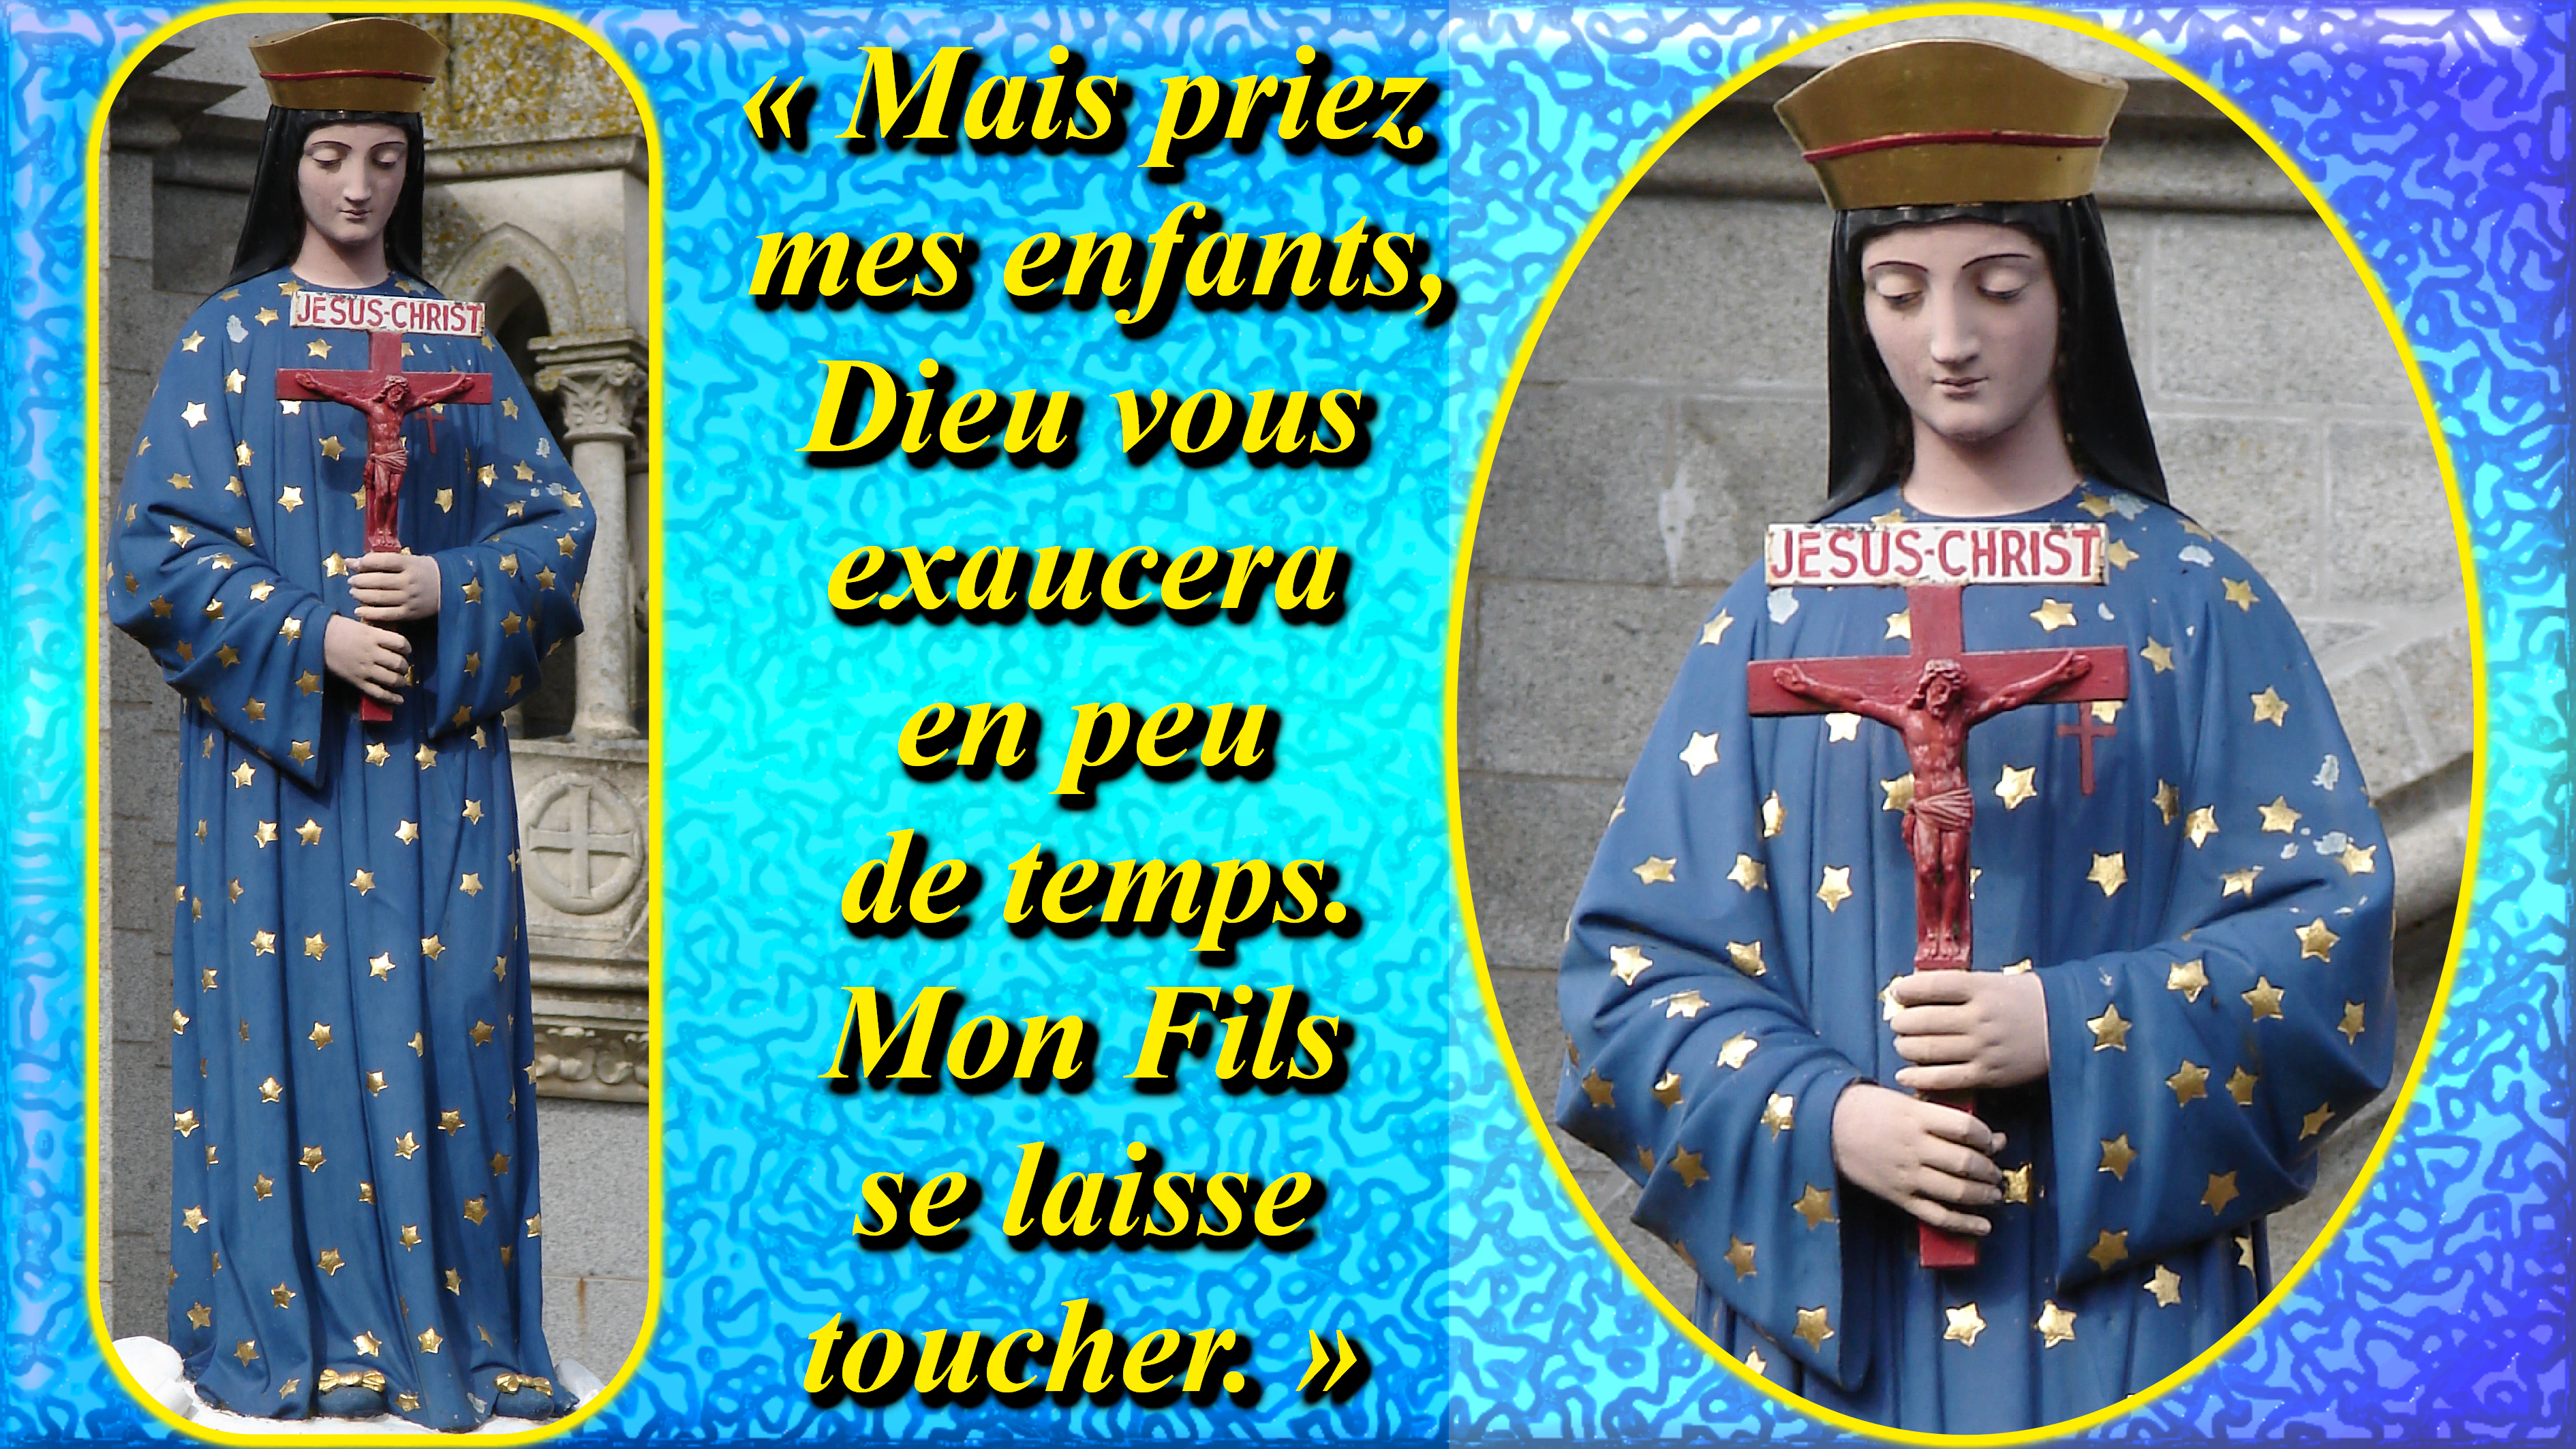 CALENDRIER CATHOLIQUE 2020 (Cantiques, Prières & Images) Notre-dame-de-pon...enfants--56eefc7